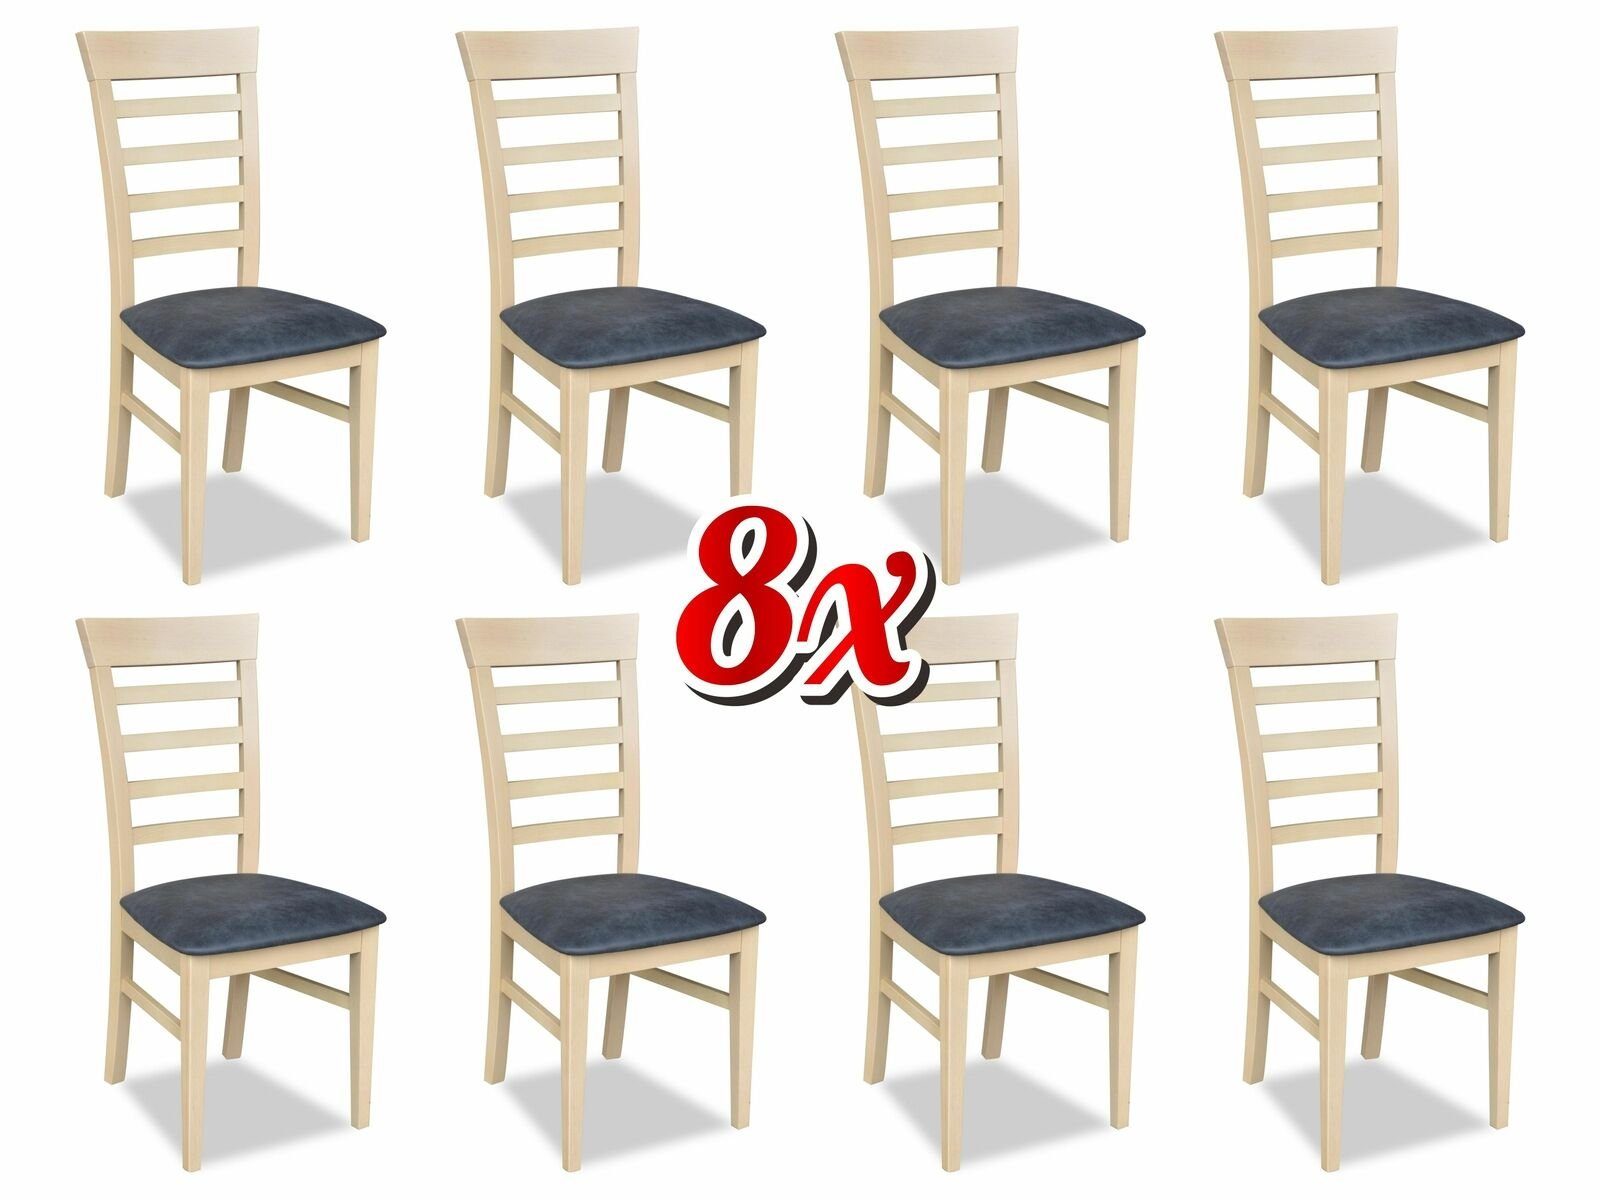 JVmoebel Stuhl, Garnitur Stühle Gastro Esszimmer Gruppe Set 8x Sessel Stuhl Design Holz Leder